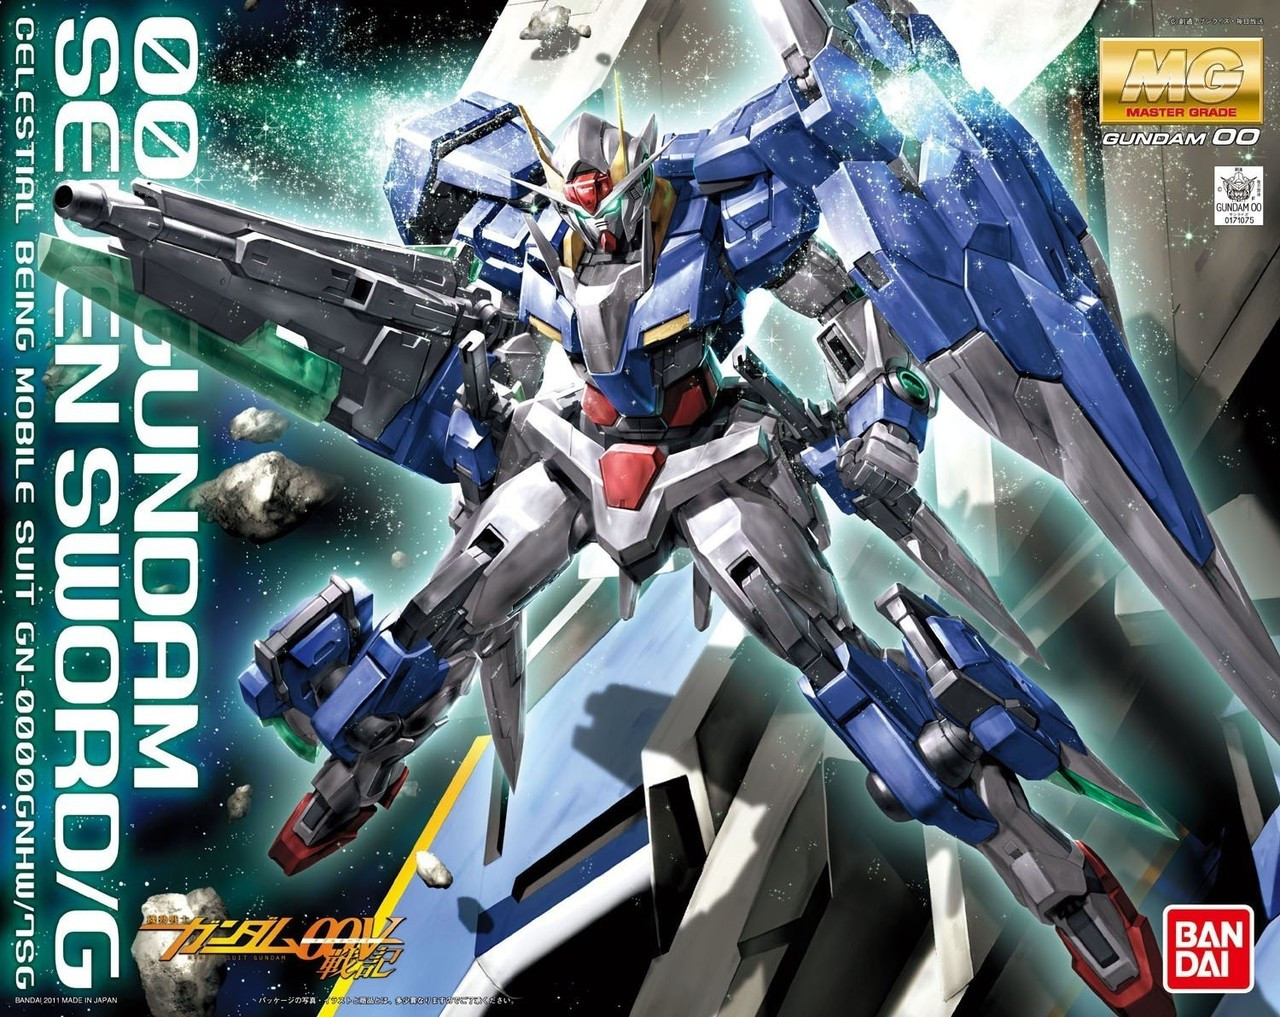 00 Gundam Seven Sword G Mg Hobbyholics